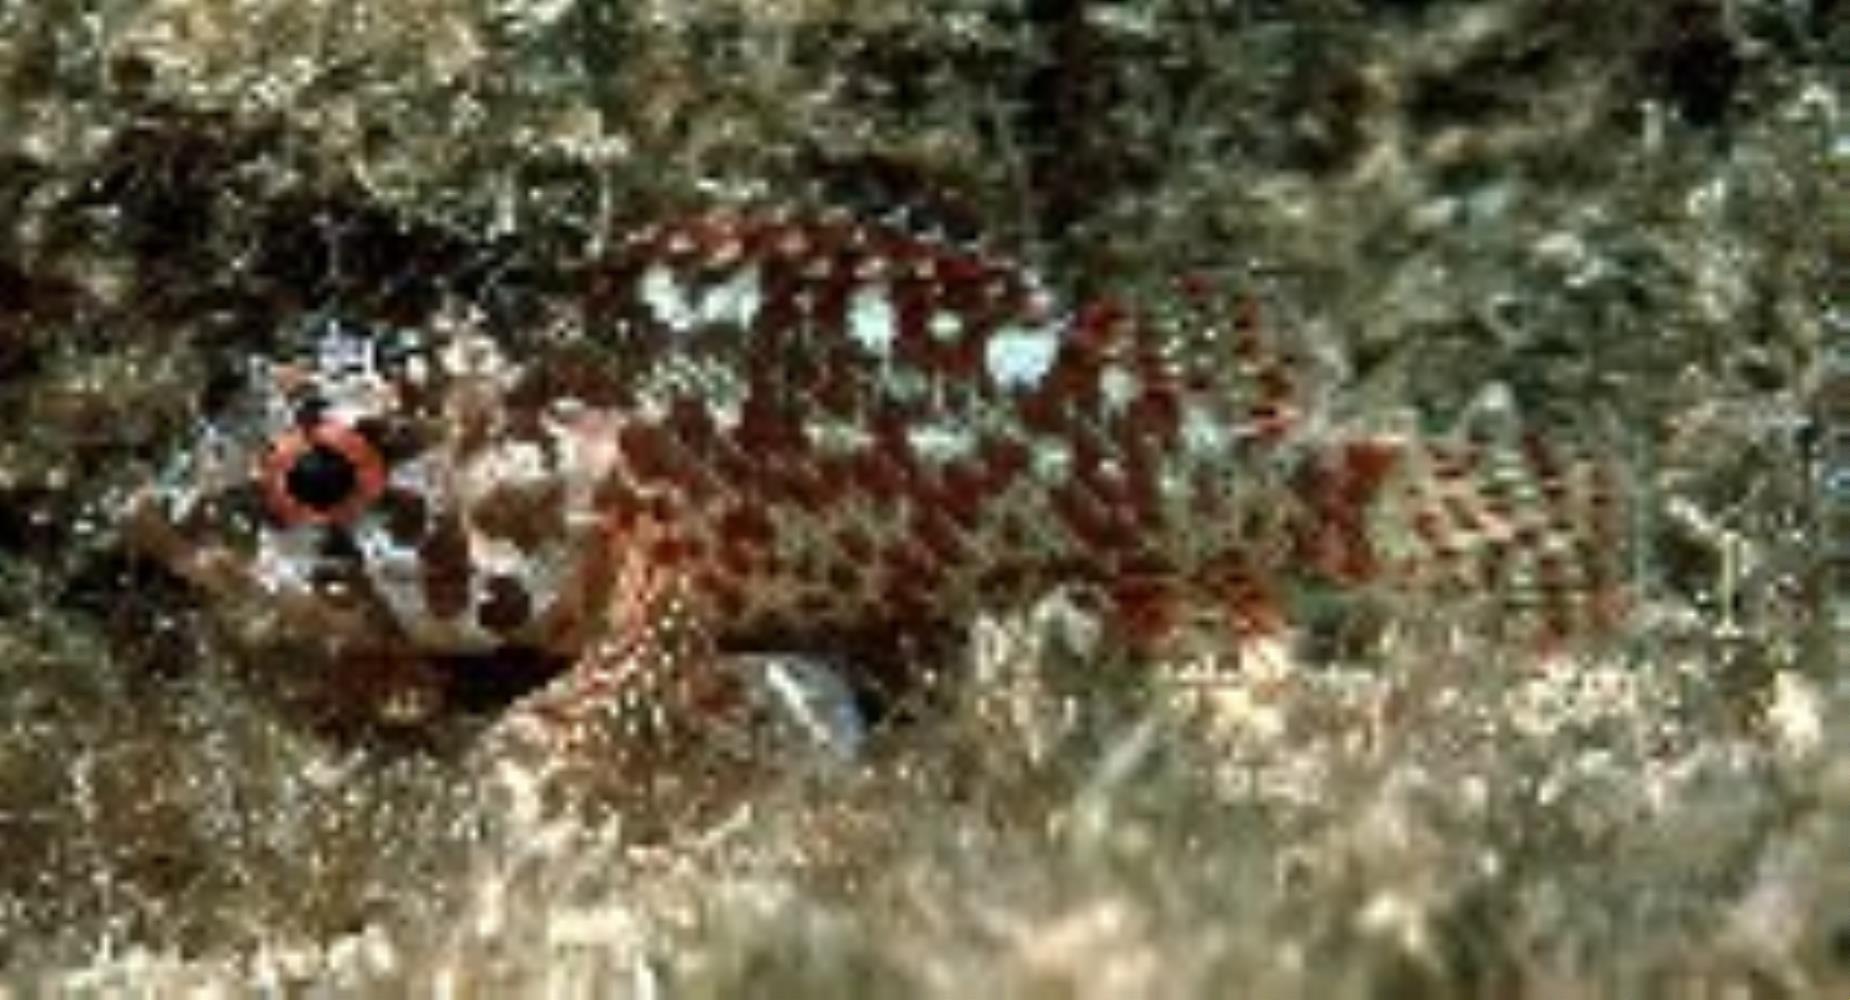 Cheekspot Scorpionfish